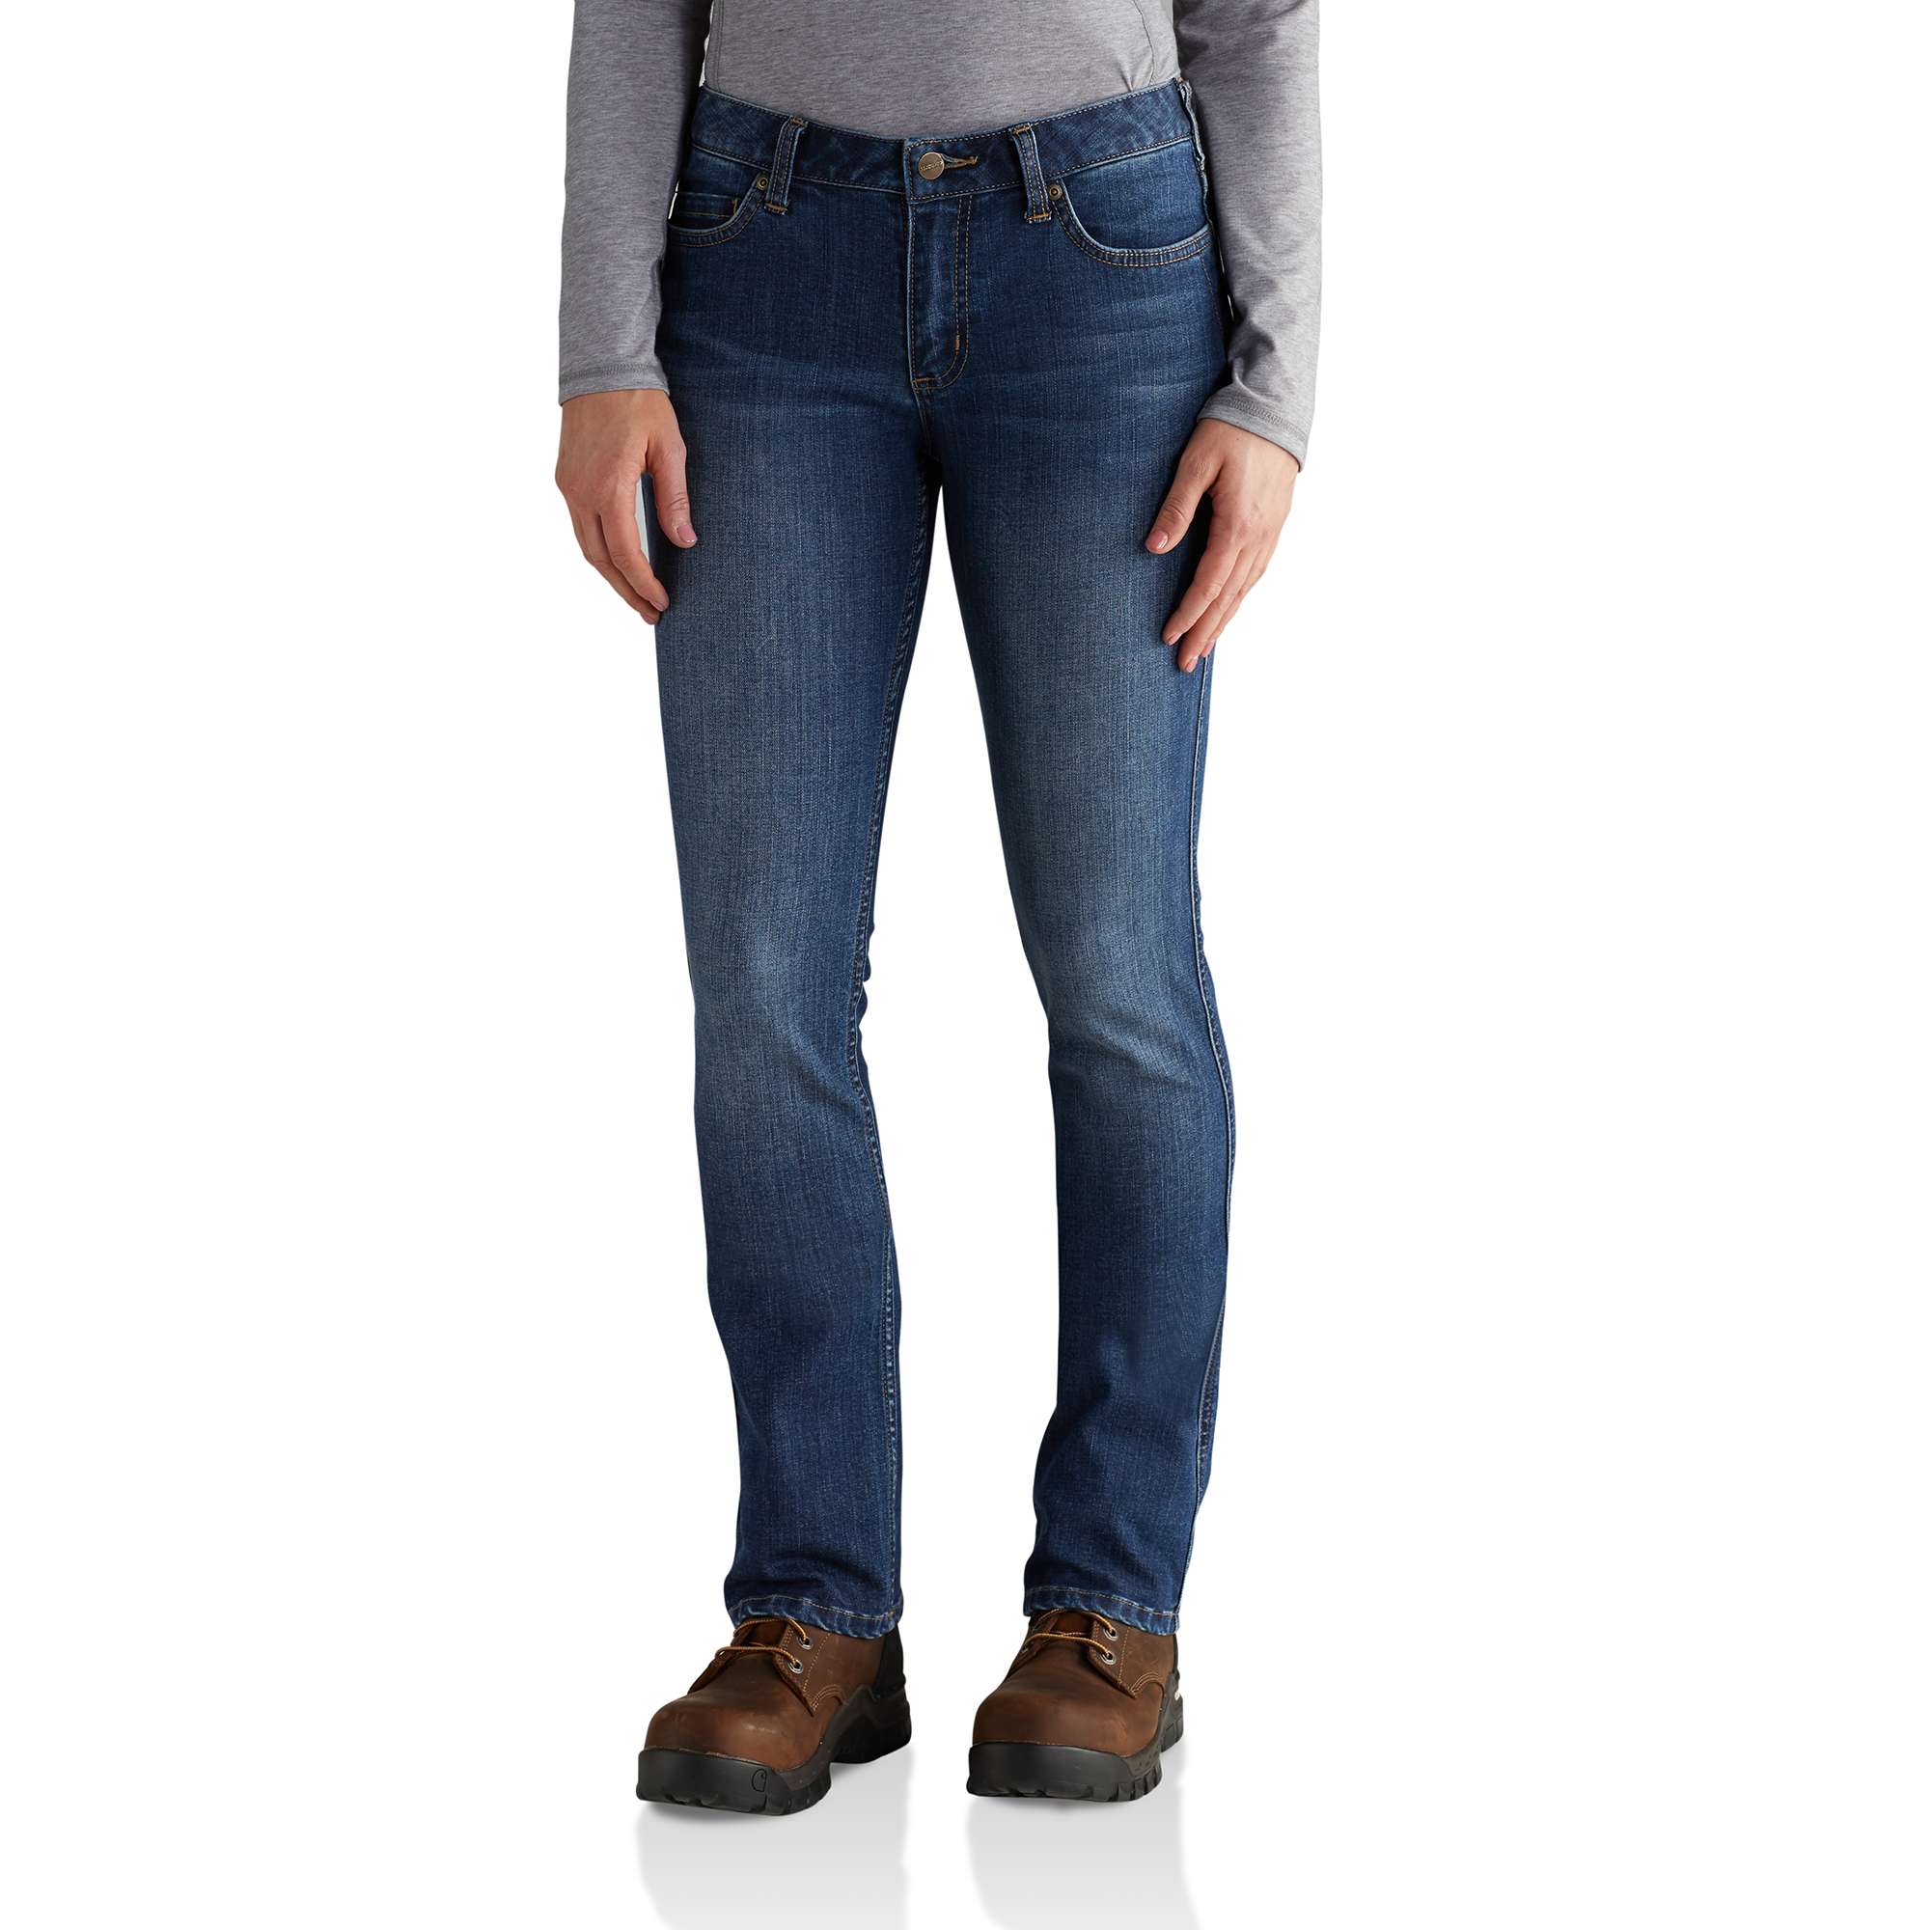 Carhartt womens bootcut jeans